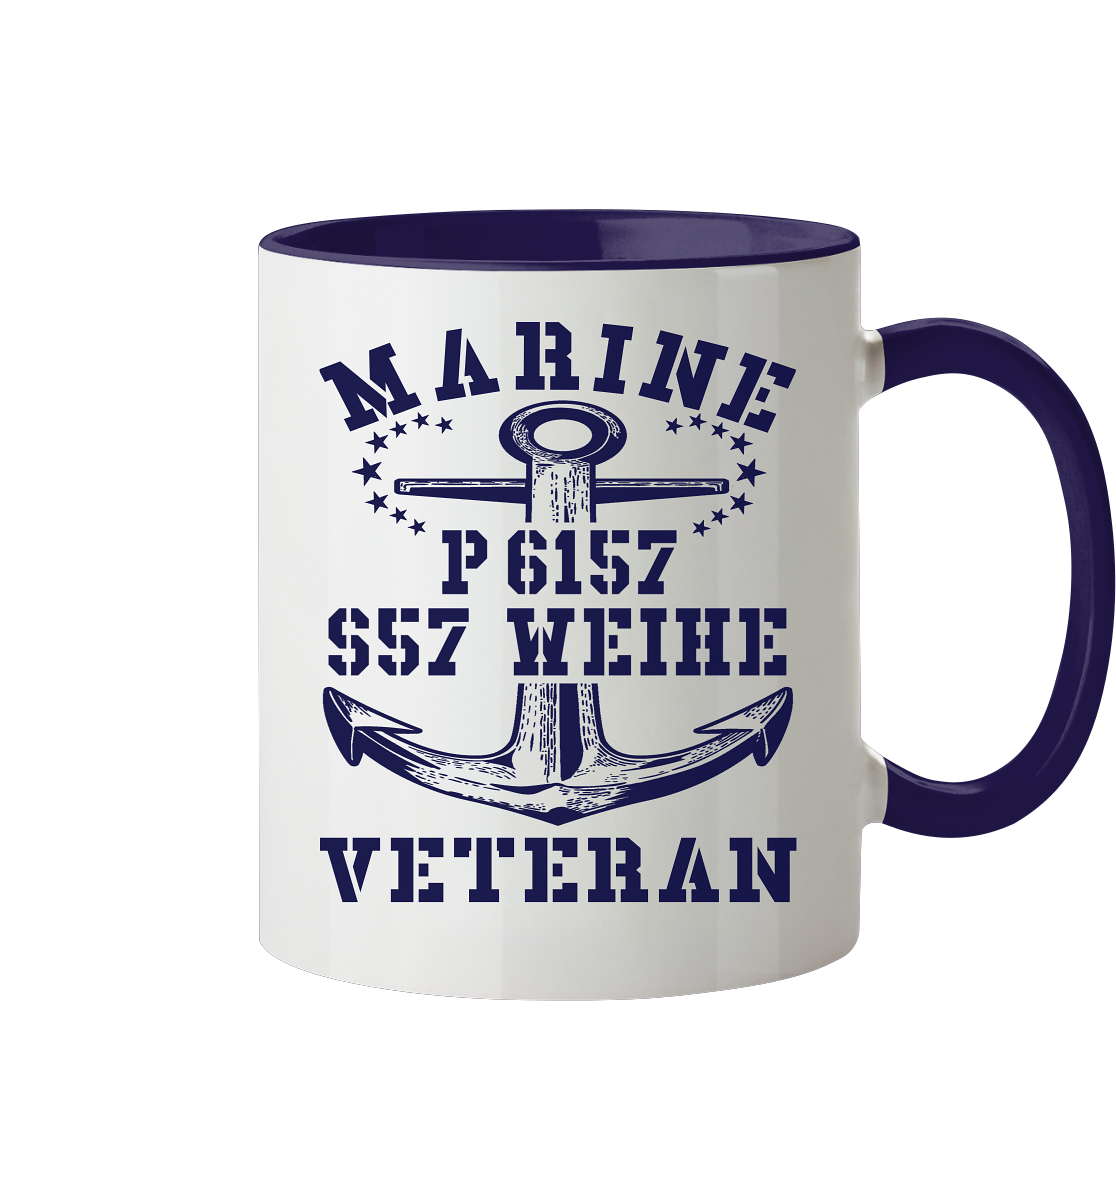 P6157 S57 WEIHE Marine Veteran - Tasse zweifarbig